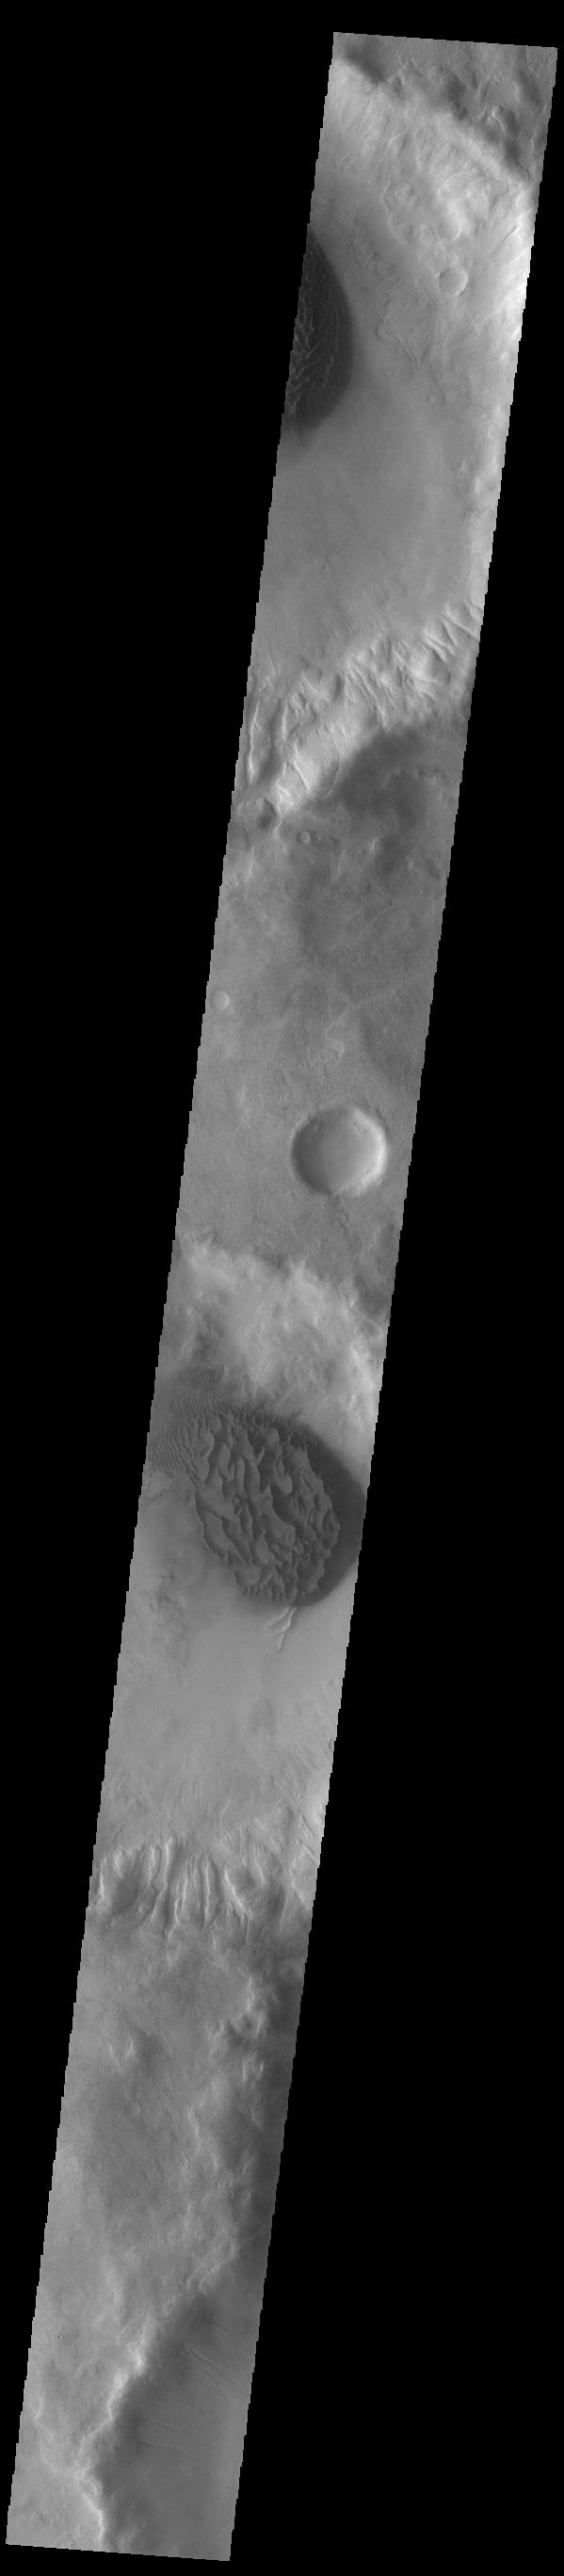 PIA24414: Crater Dunes